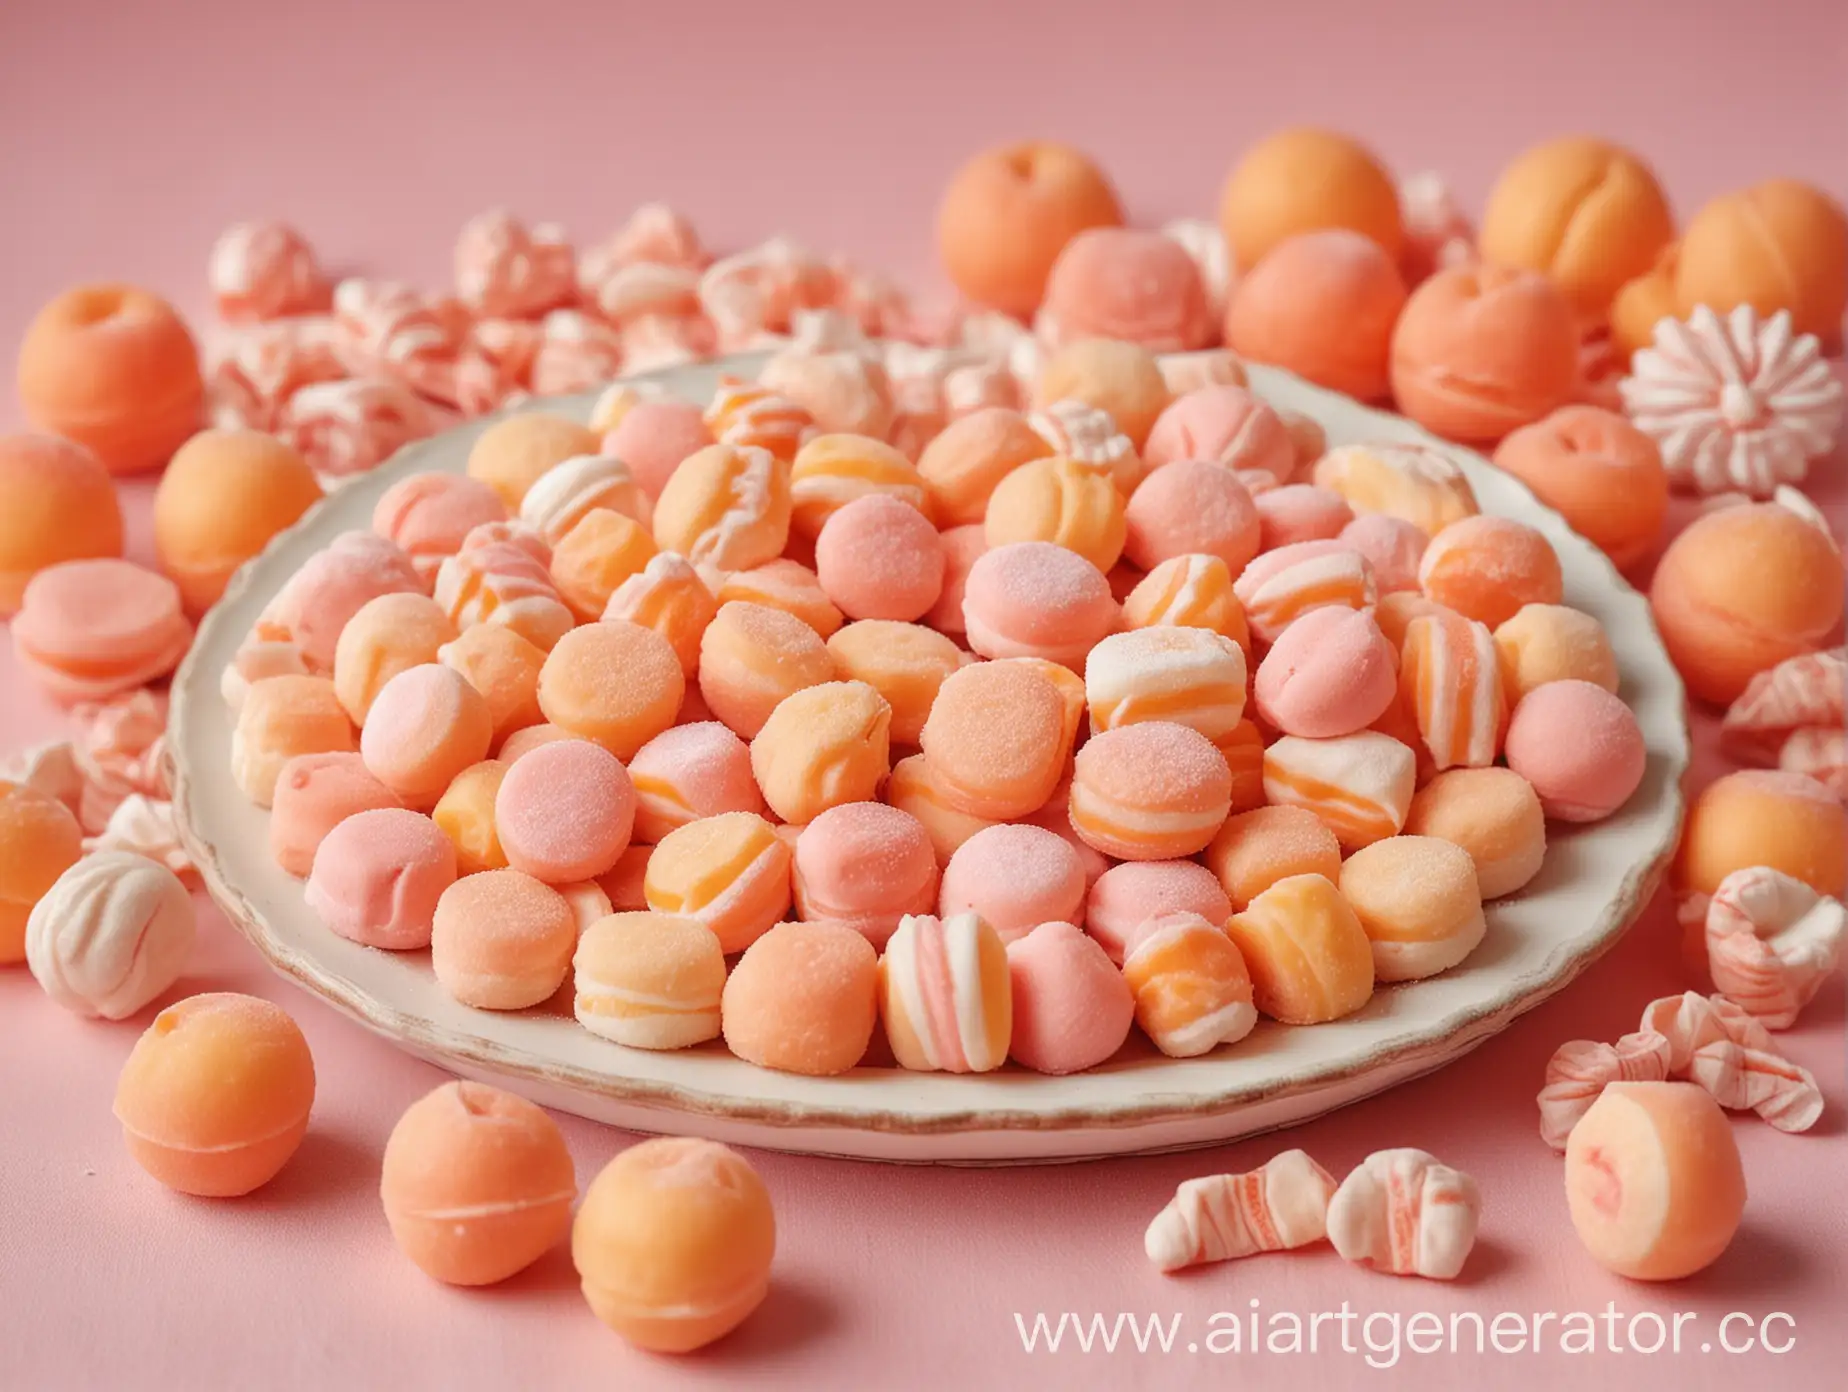 картинка на фон для презентации, пастельные тона, преобладает персиковый цвет, изображены сладости и конфеты, сладостей не очень много